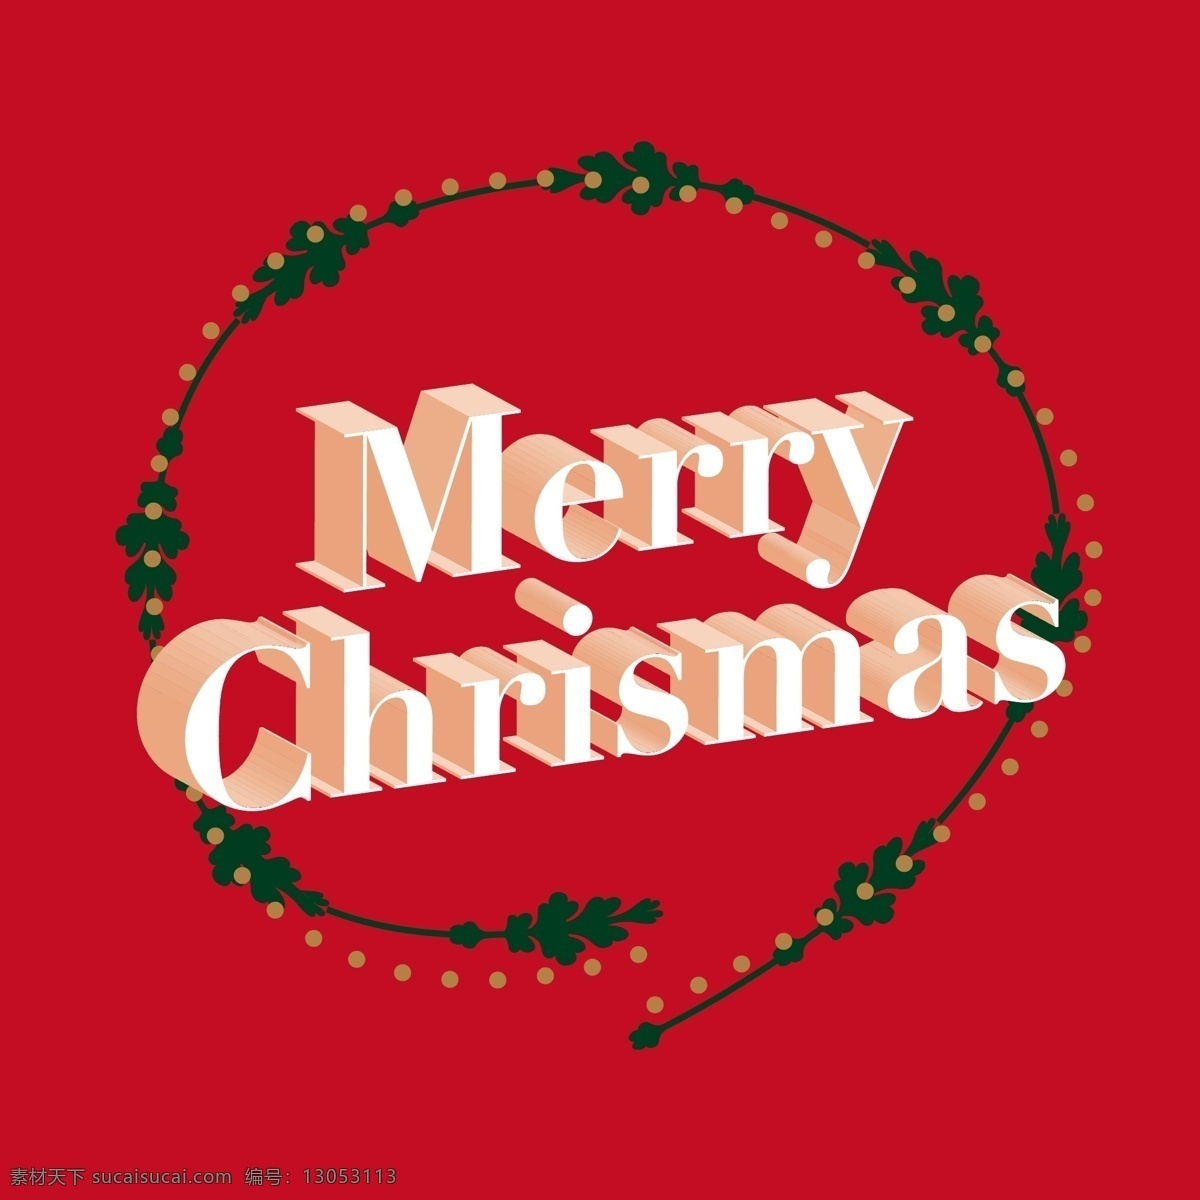 圣诞节 3d 立体 英文 字母 红色 背景 花草 贺卡 圣诞快乐 merry christmas 节日